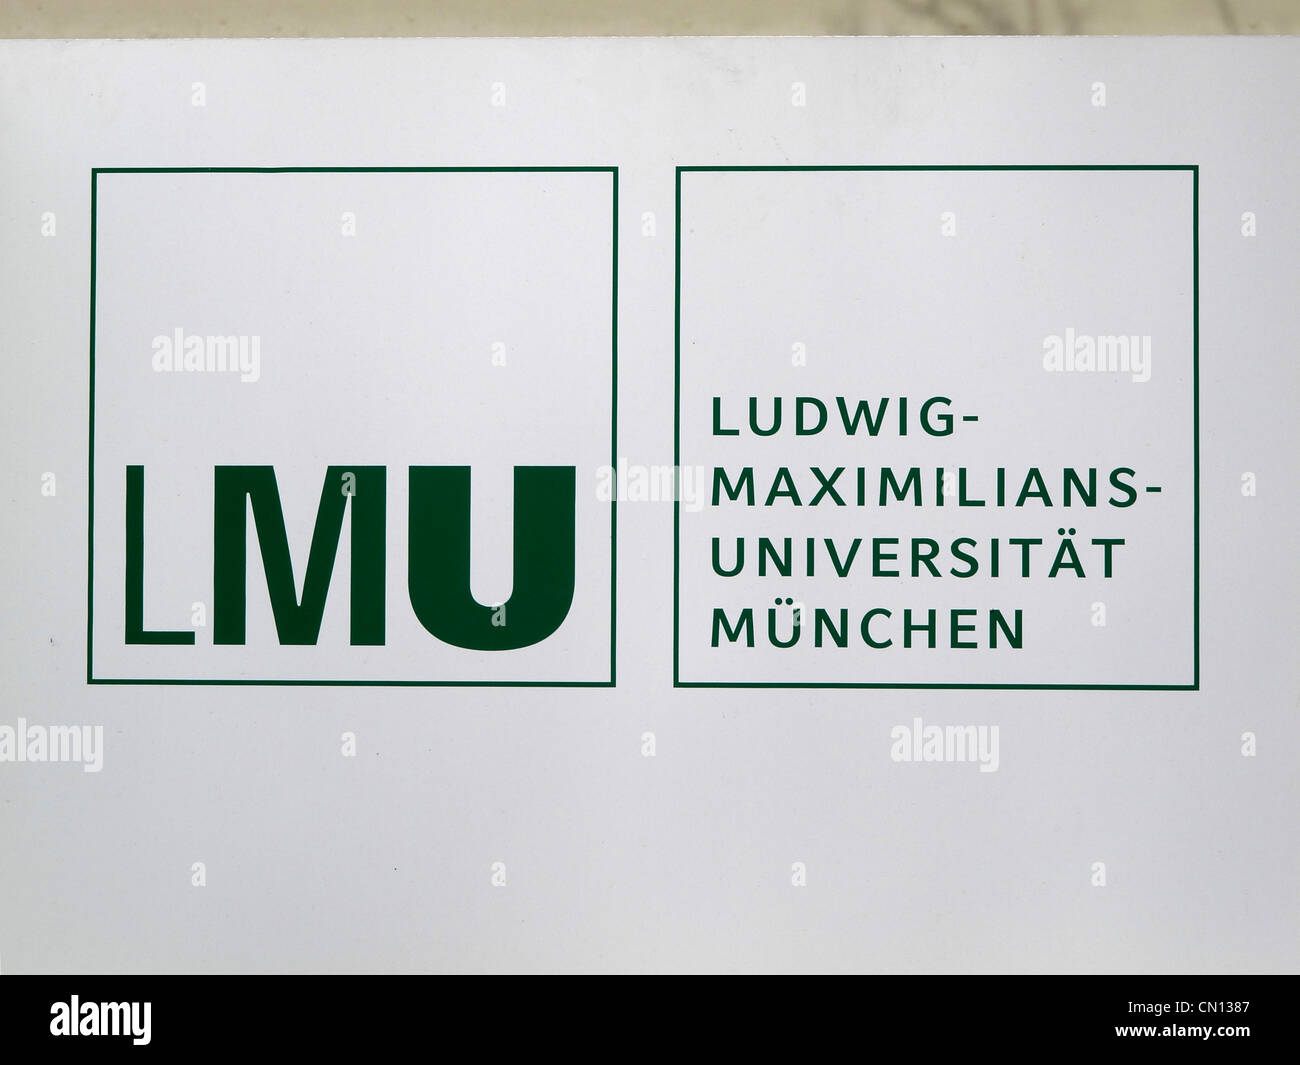 Maximiliansuniversität LMU München Allemagne Munich Ludwig Banque D'Images